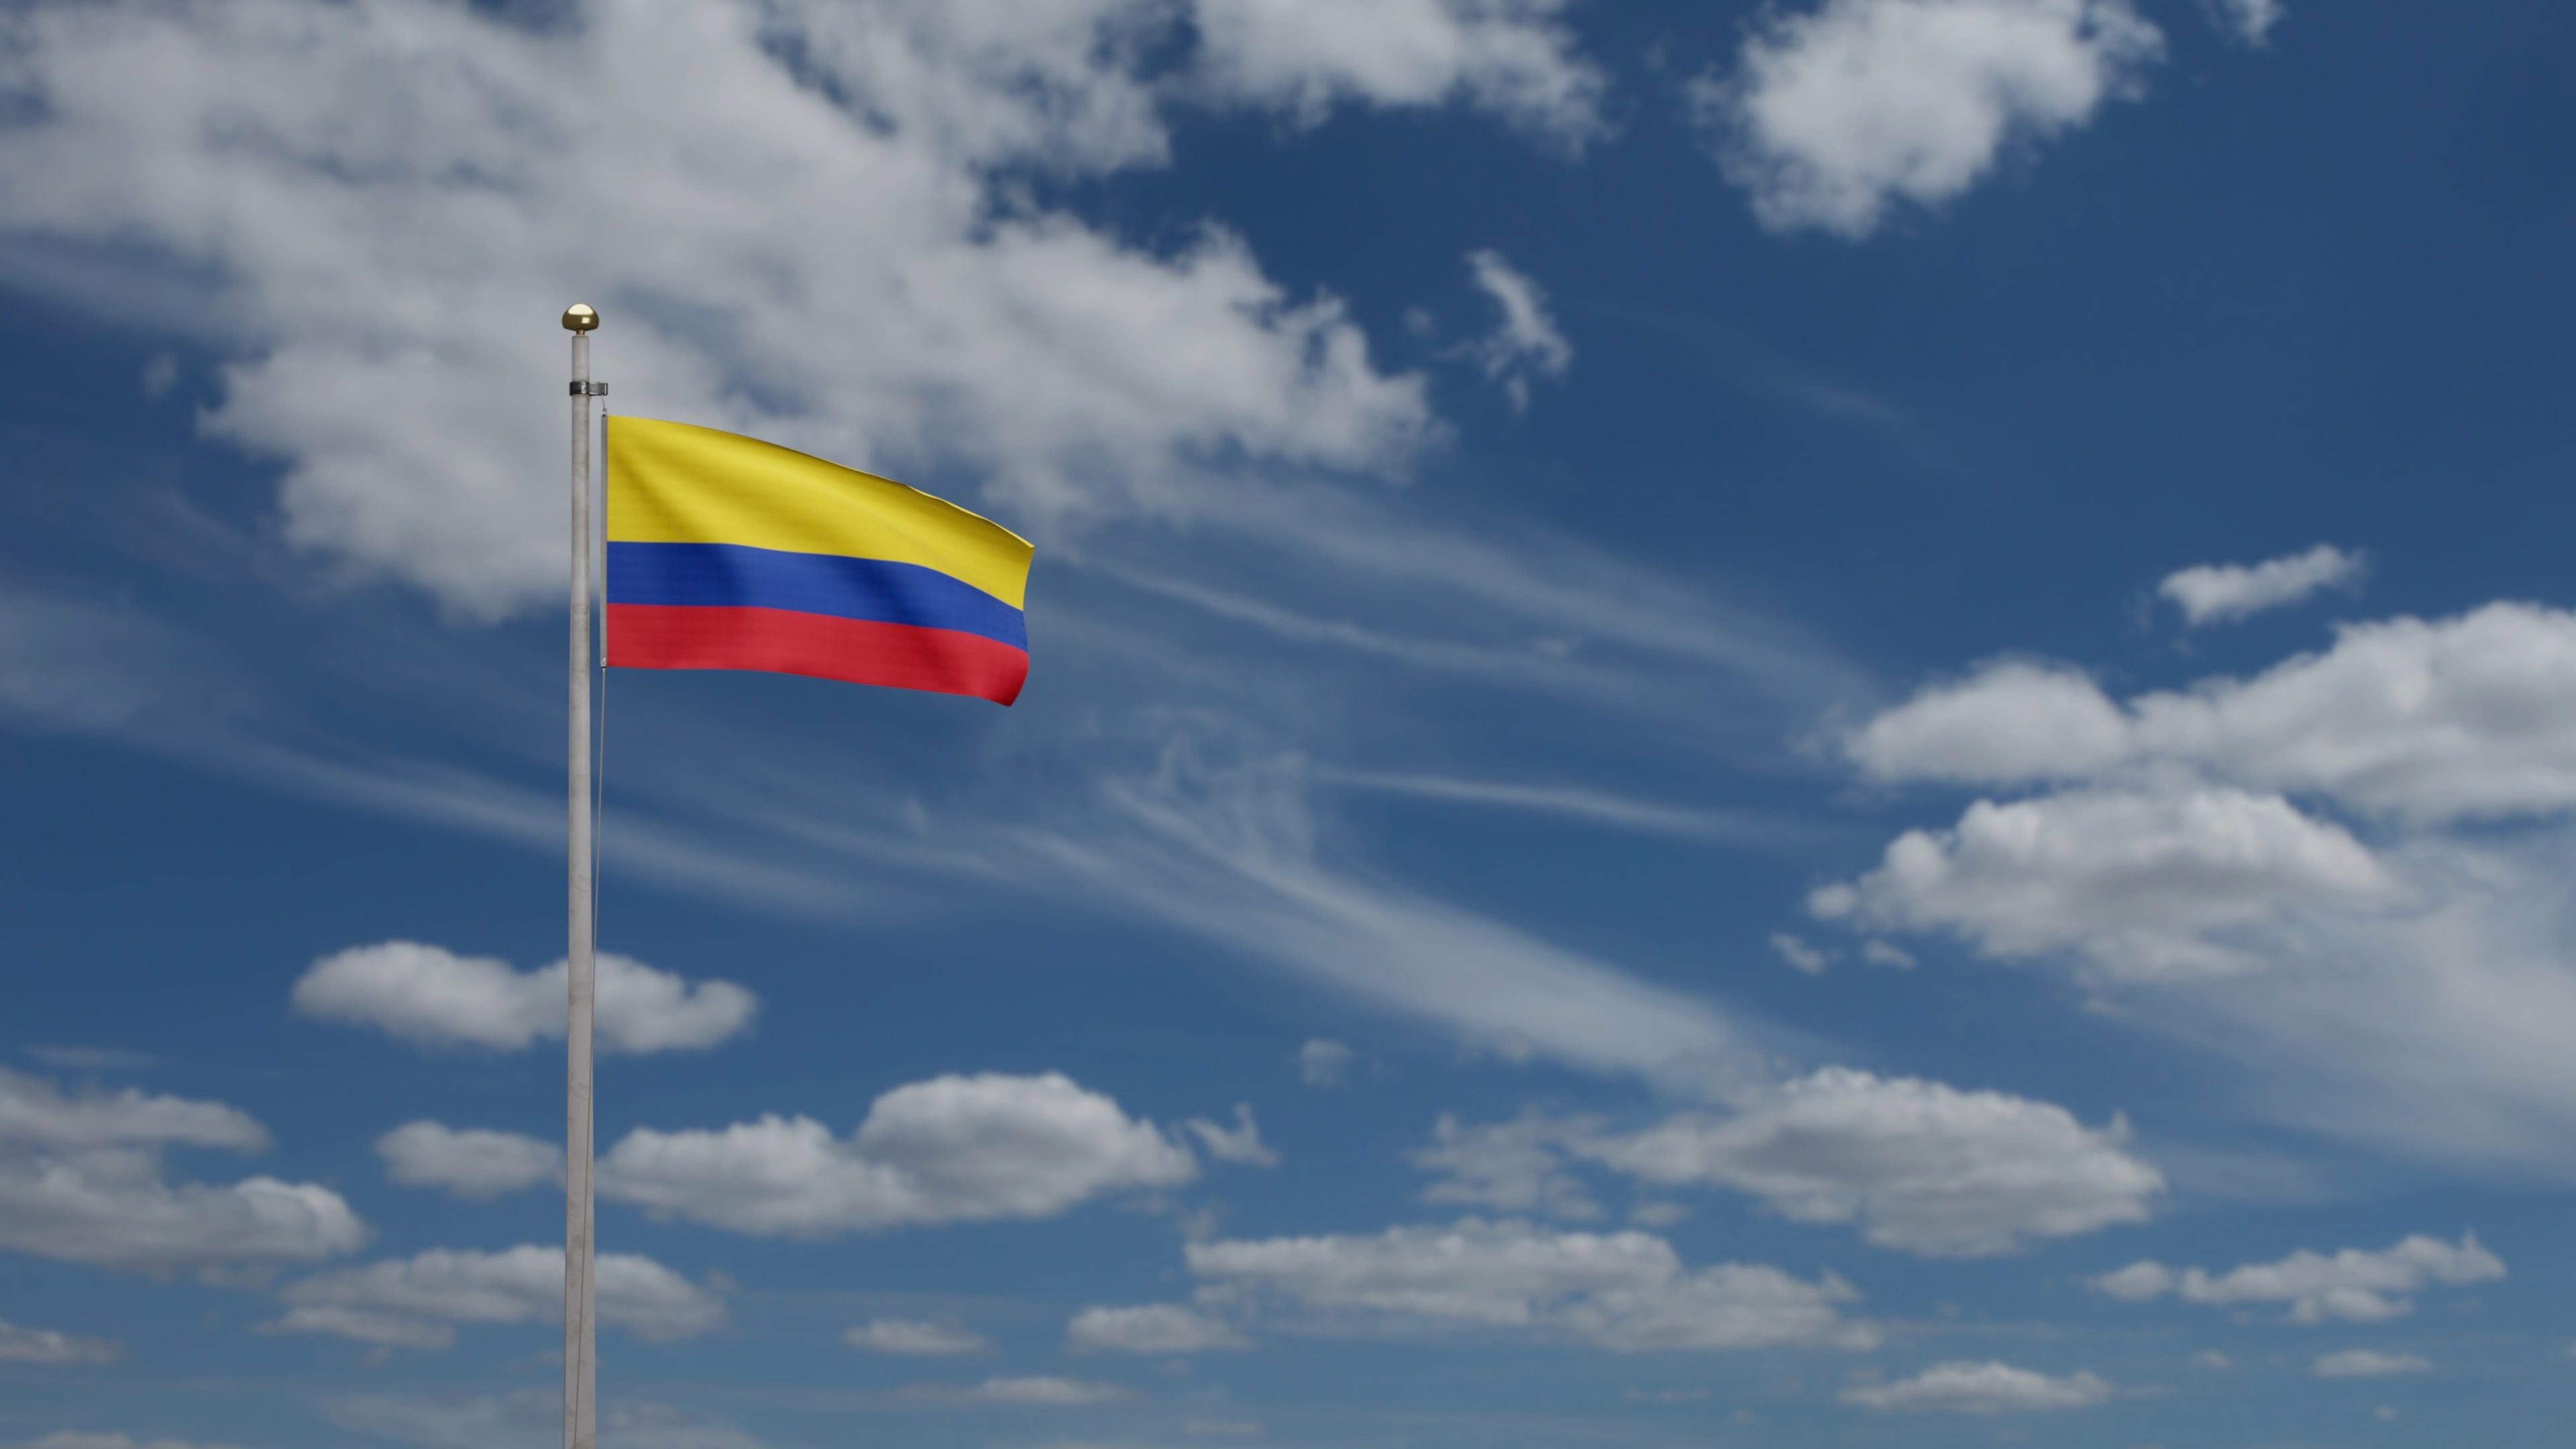 ¿Qué hay que recuperar en Colombia?